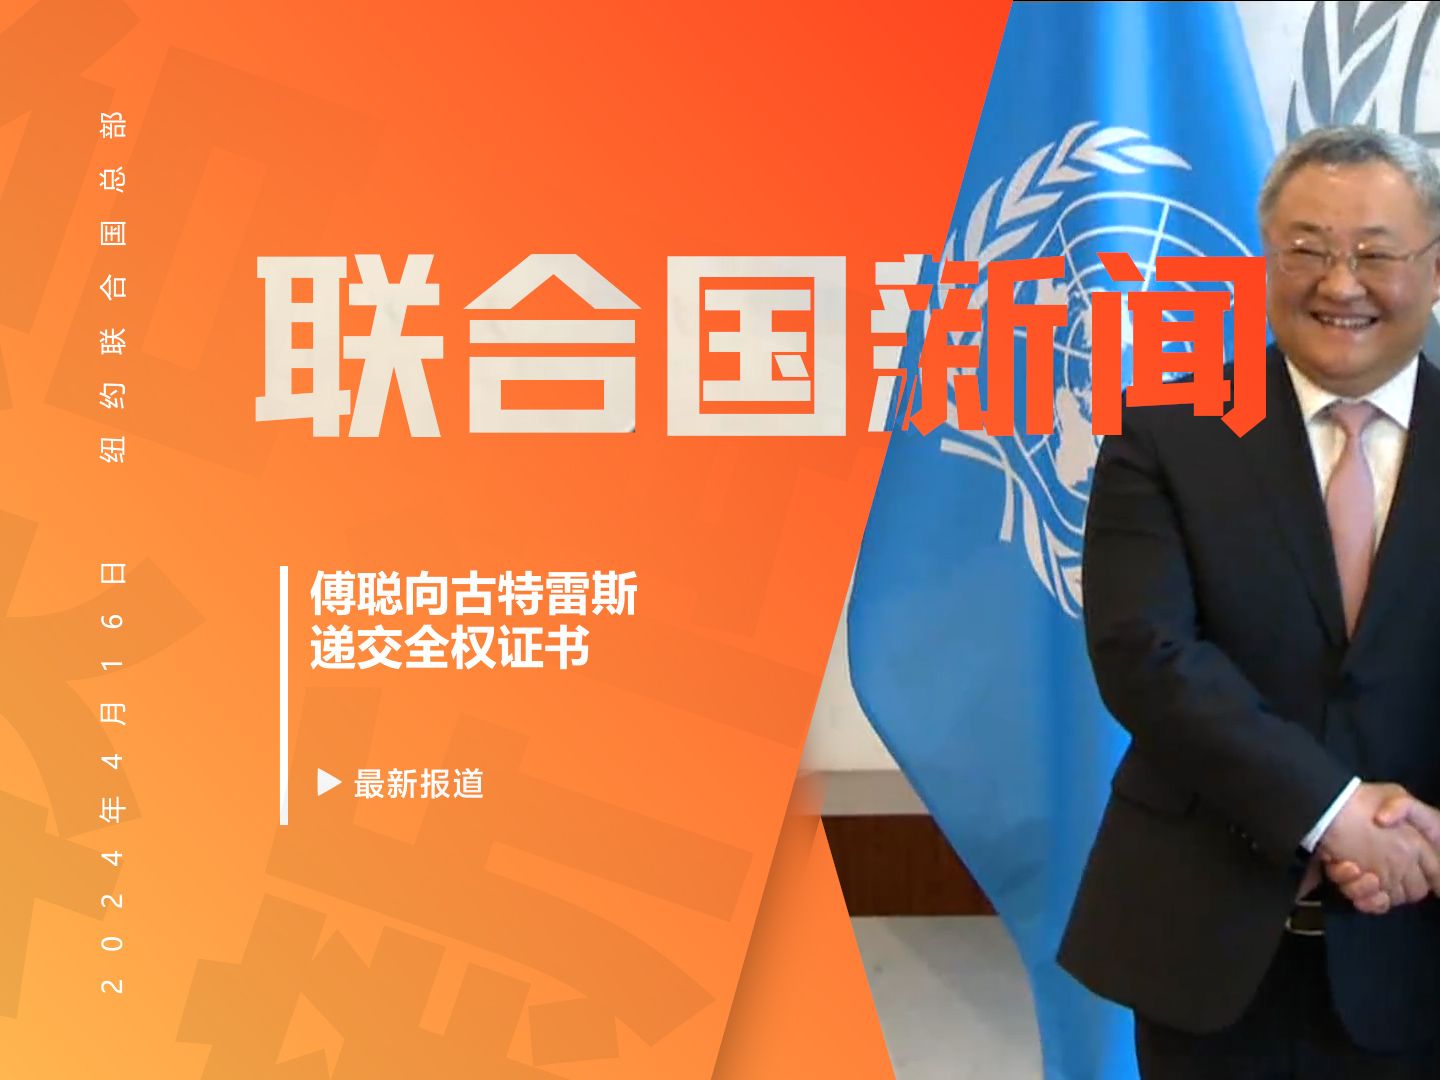 新任中国常驻联合国代表傅聪递交全权证书